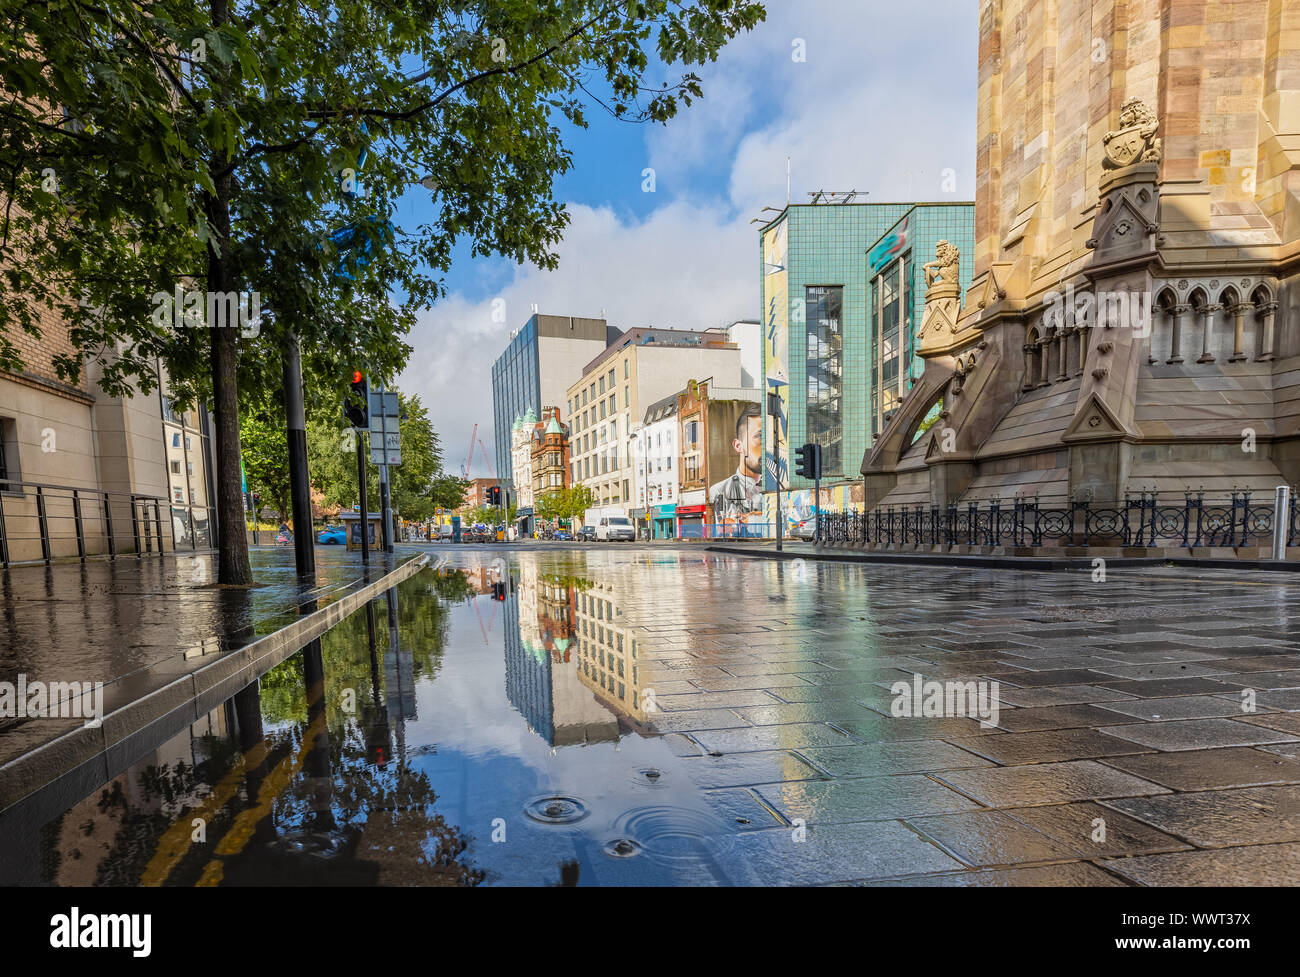 Impression de la rue Victoria et Albert Memorial Clock Tower à Belfast Banque D'Images